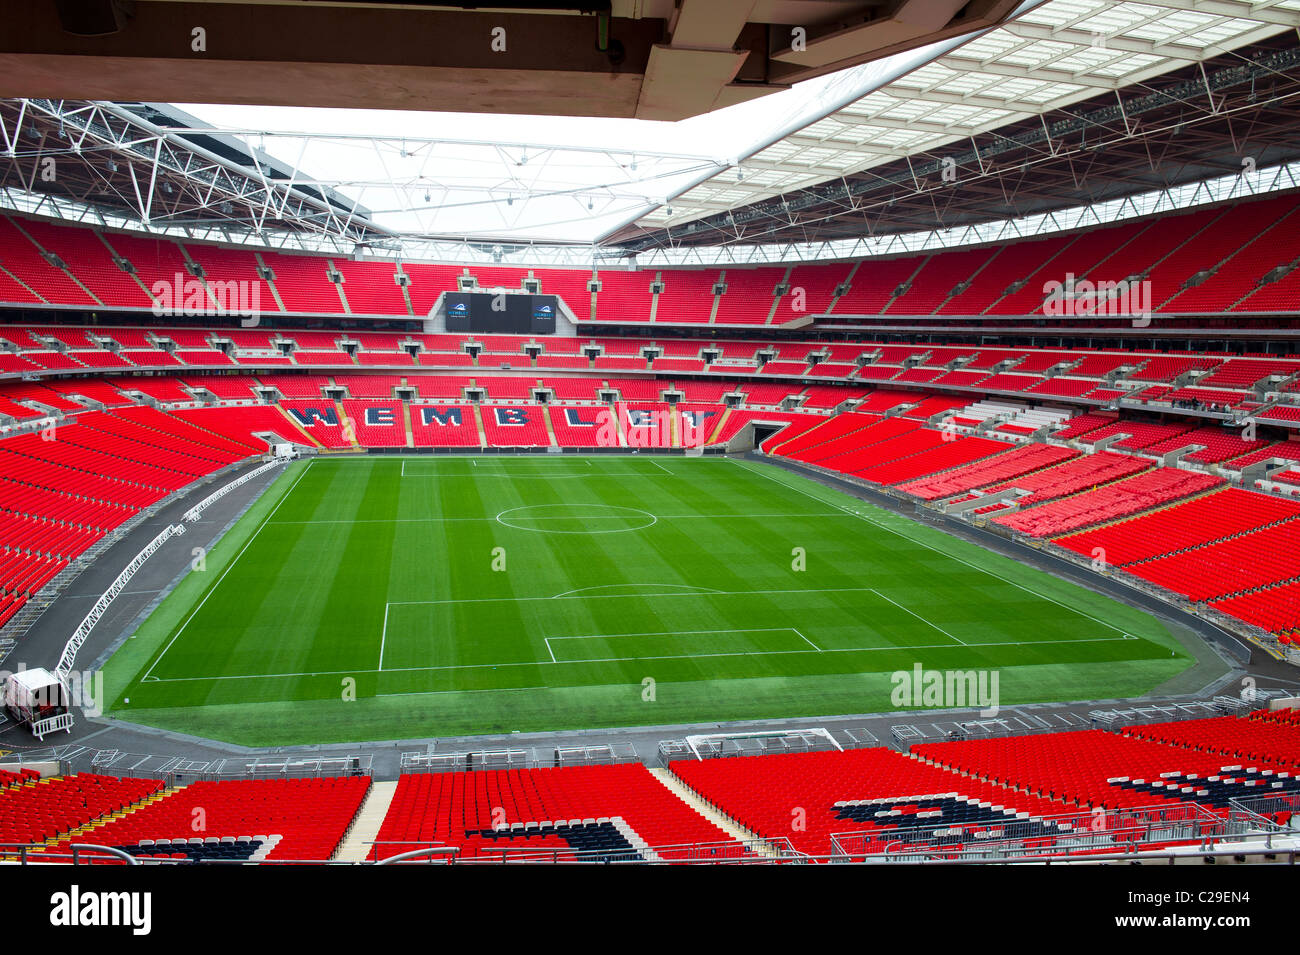 Le stade de football de Wembley vide Banque D'Images